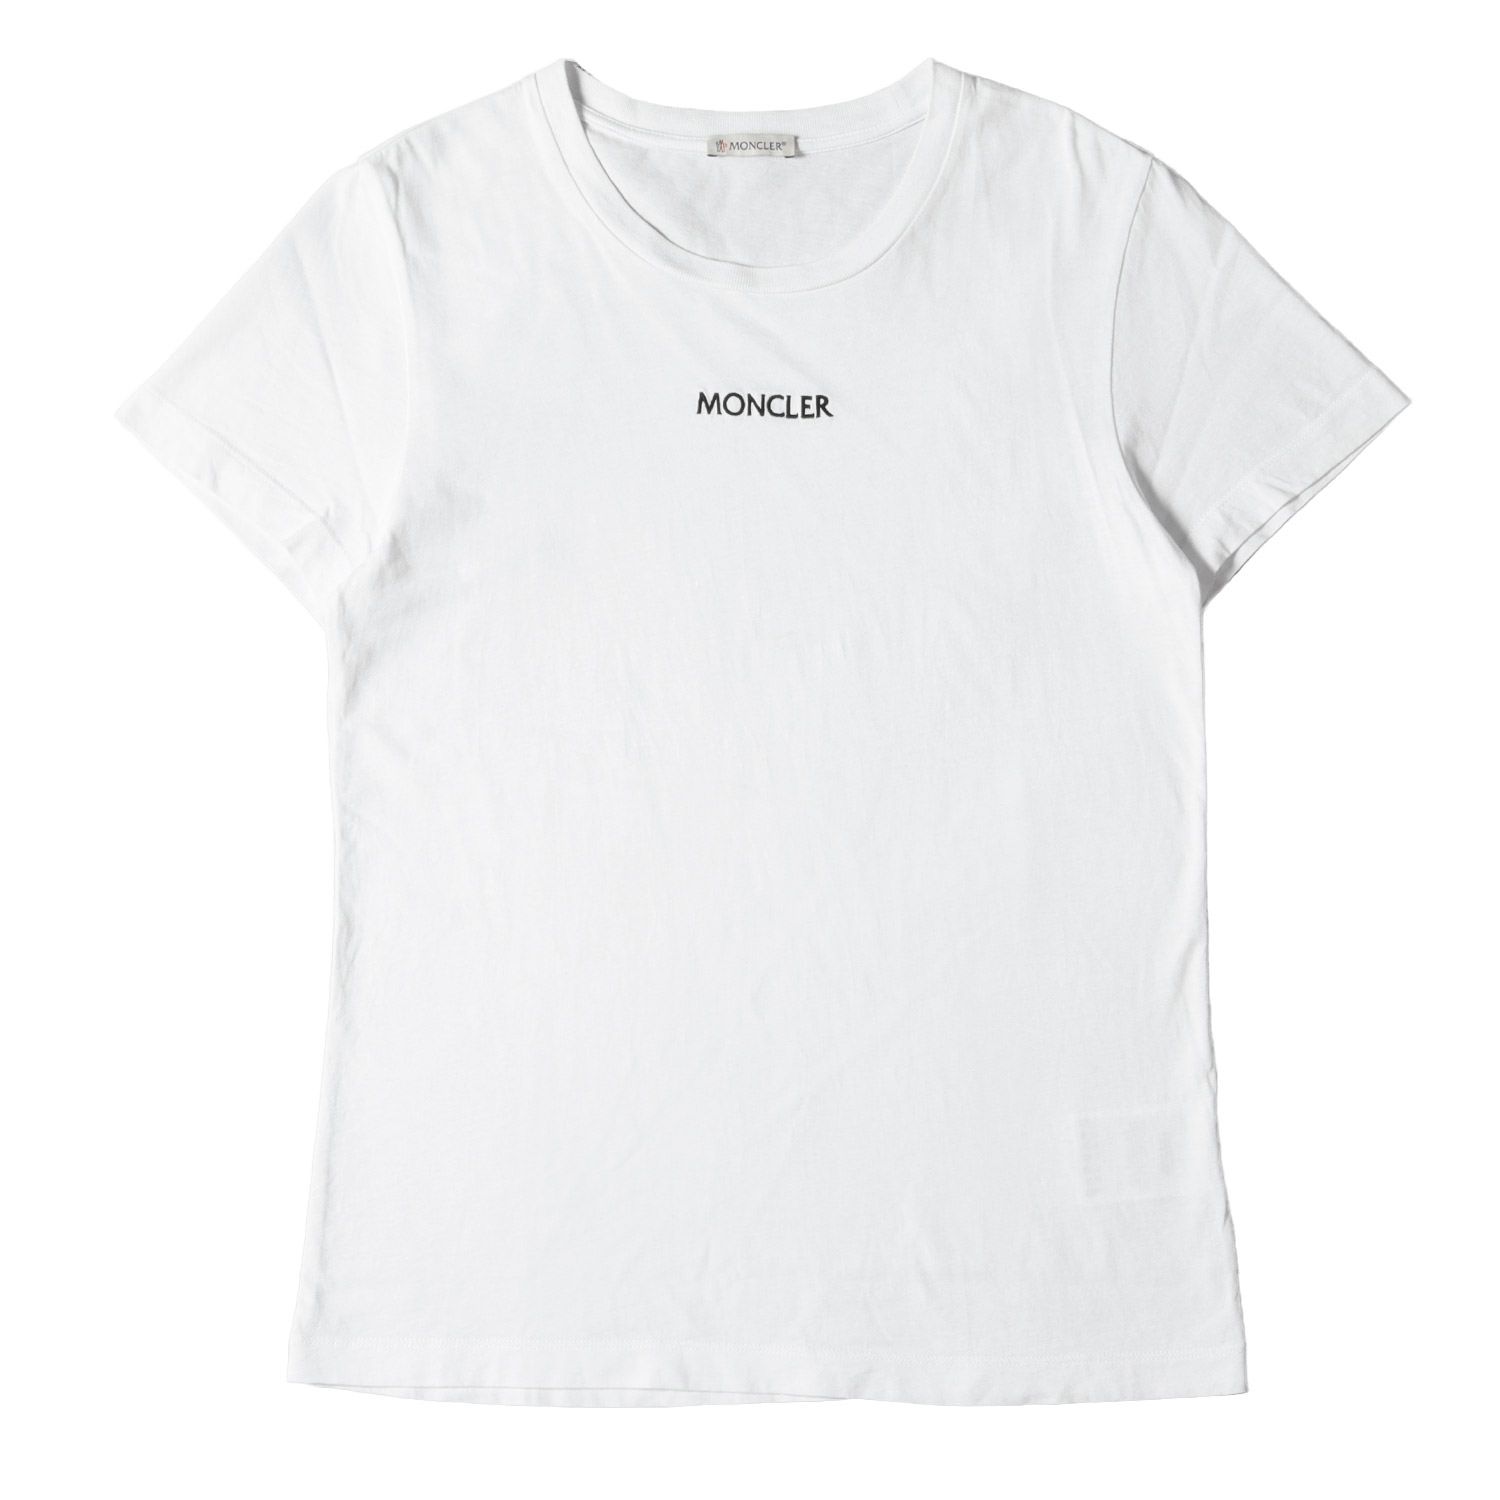 MONCLER モンクレール Tシャツ サイズ:M 21SS ロゴ 刺繍 クルーネック ...